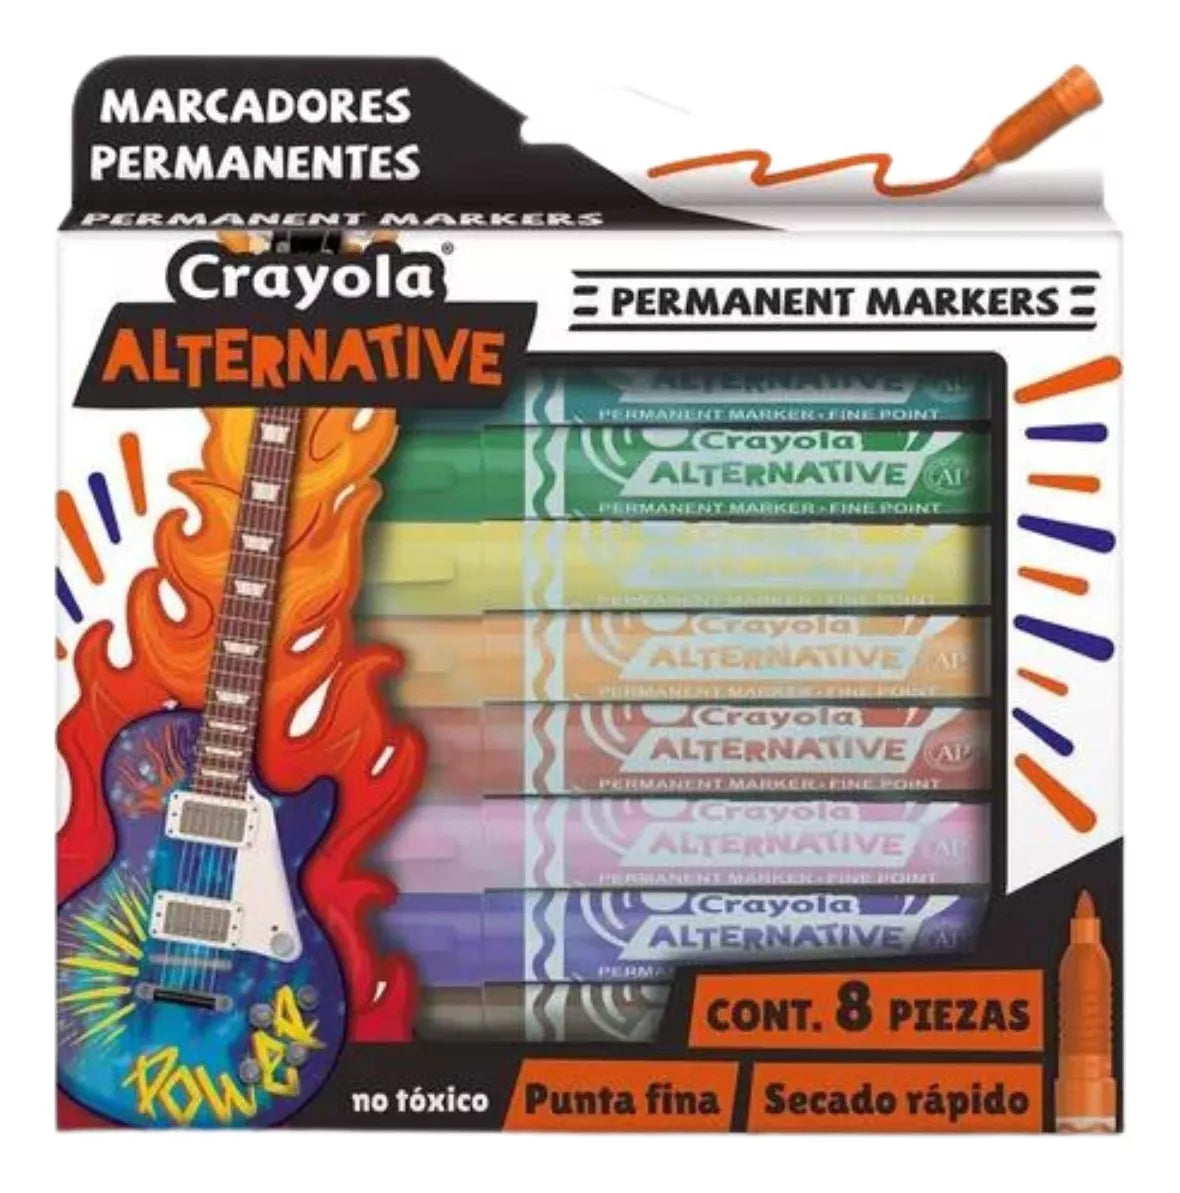 8 Marcadores Permanente Alternative Crayola Punta Fina Color